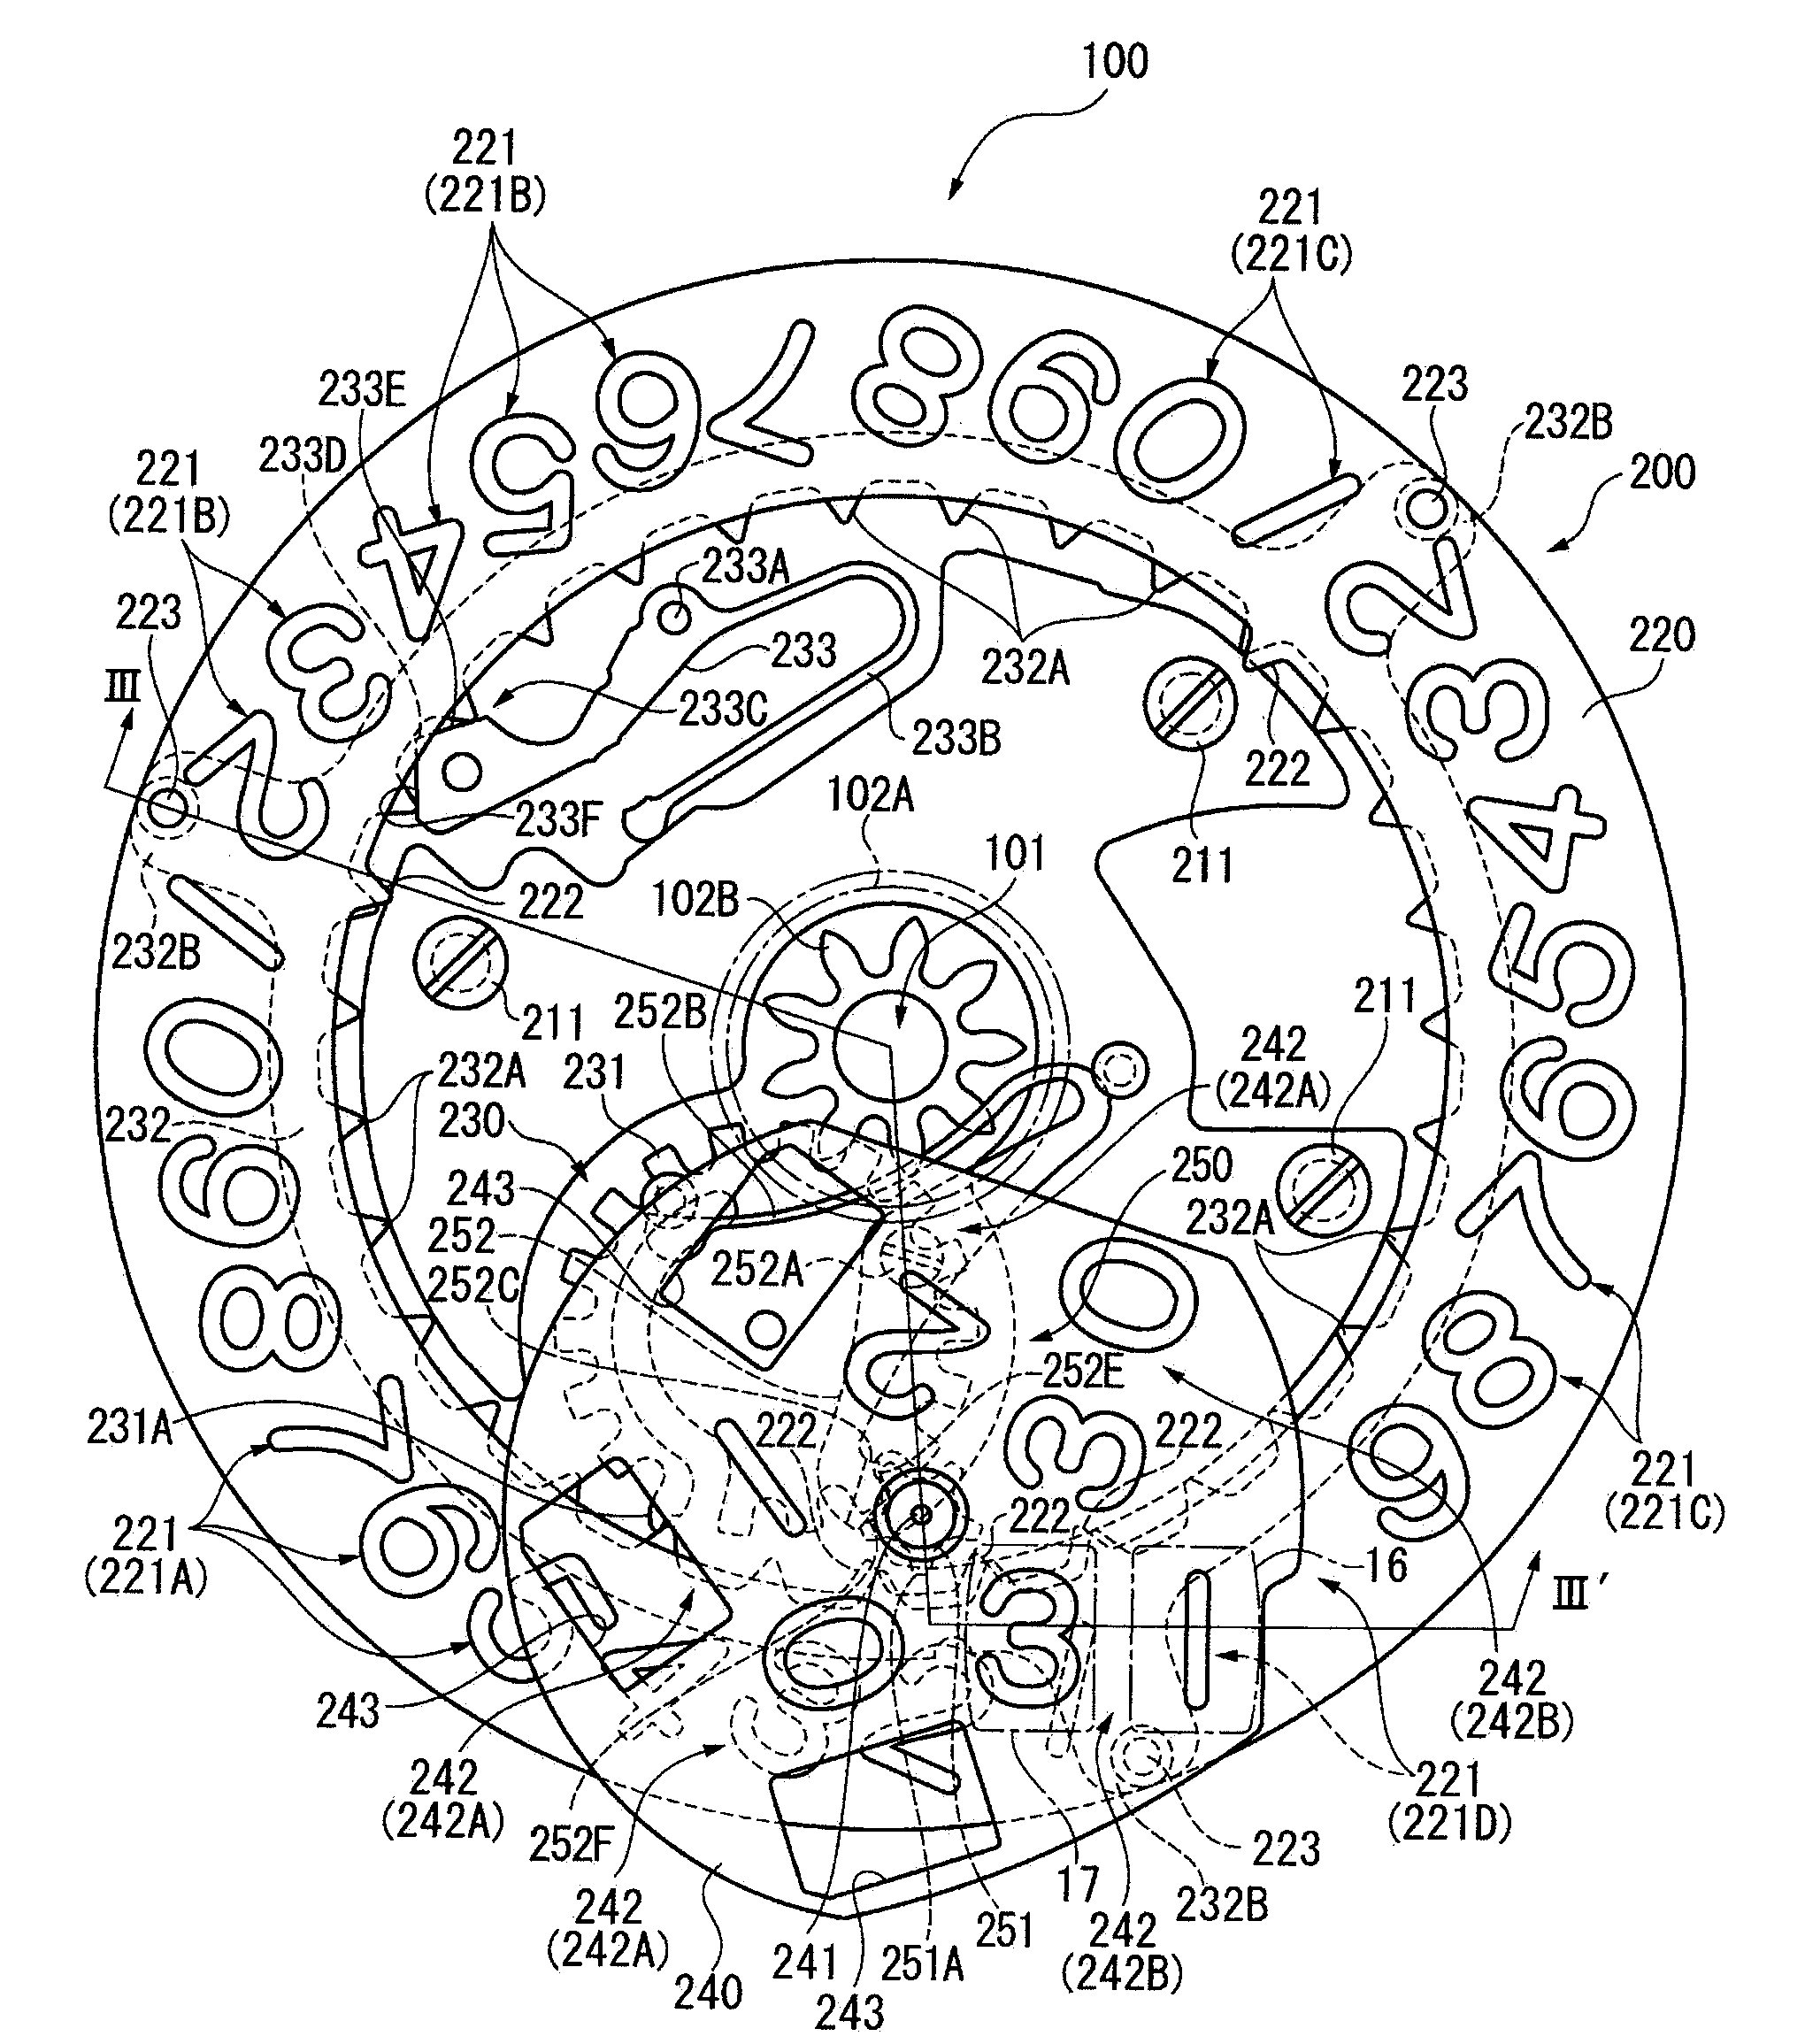 Timepiece with a calendar mechanism